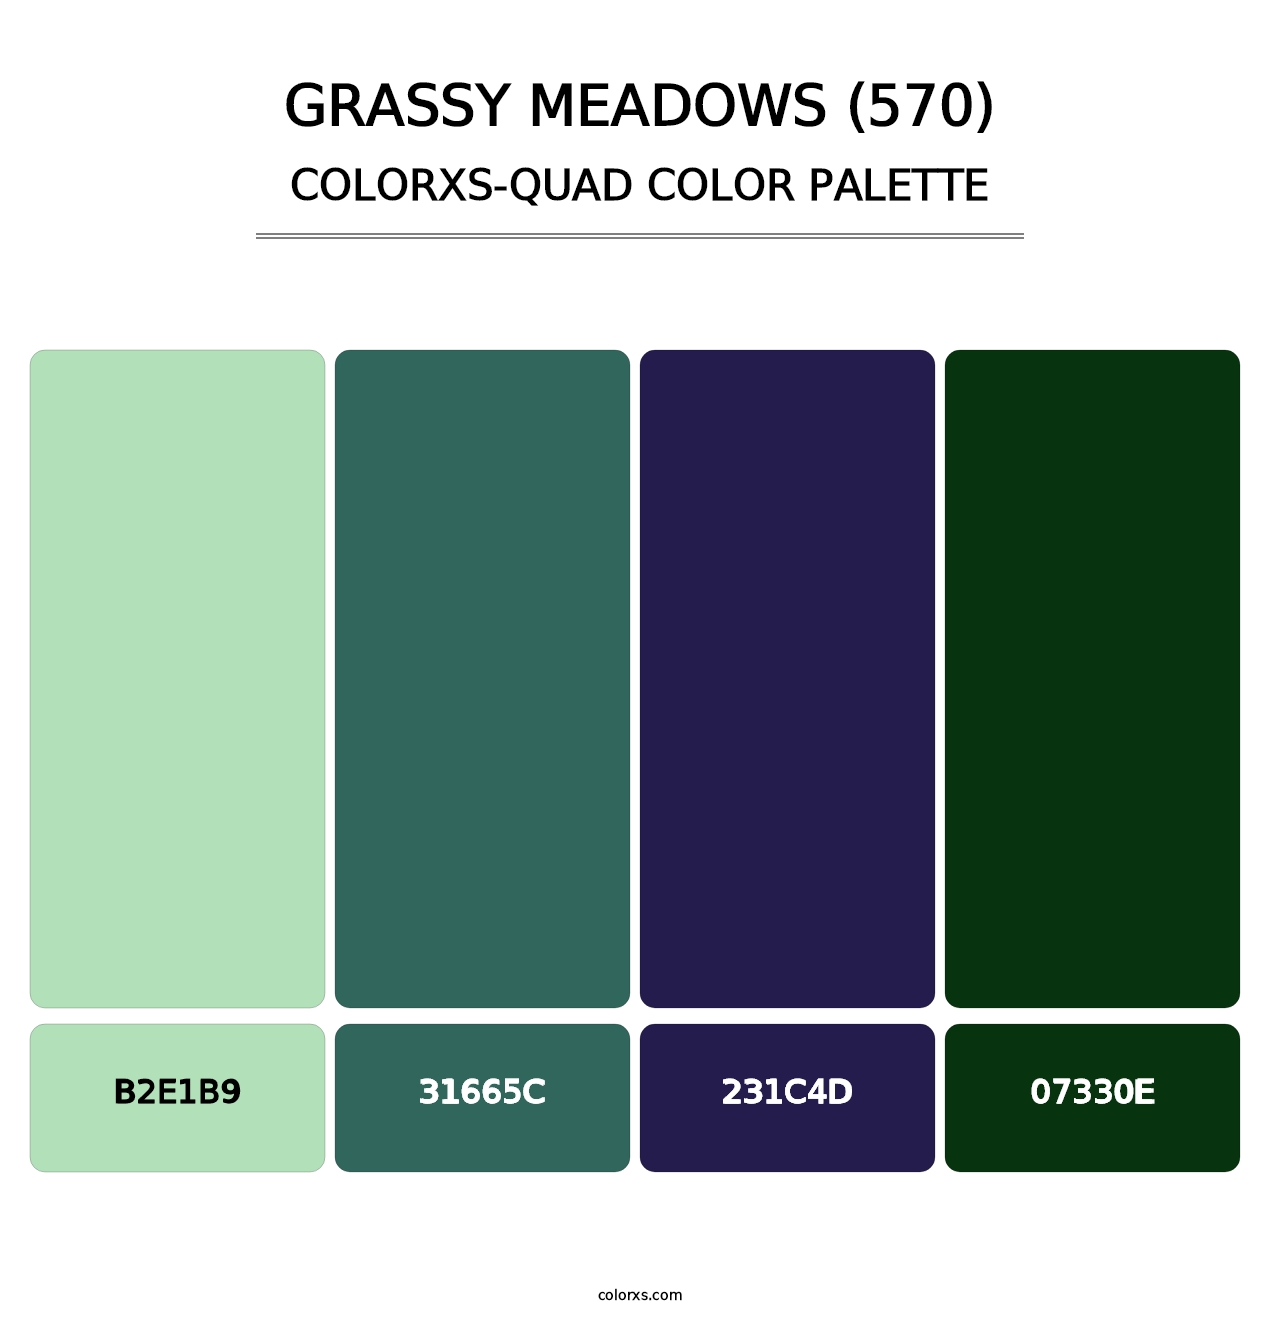 Grassy Meadows (570) - Colorxs Quad Palette